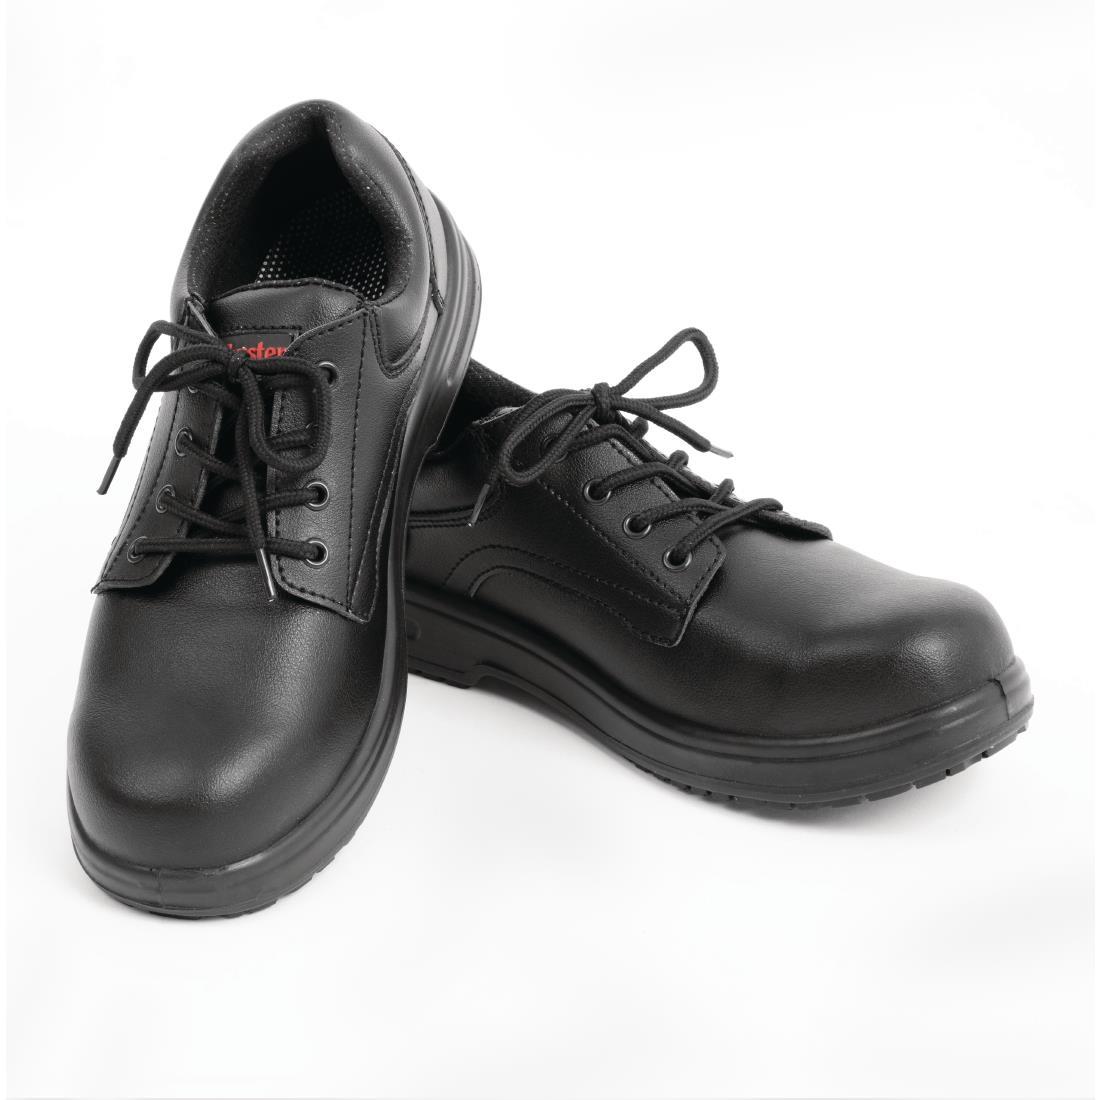 Slipbuster Basic Shoes Slip Resistant Black 37 - BB498-37  - 4